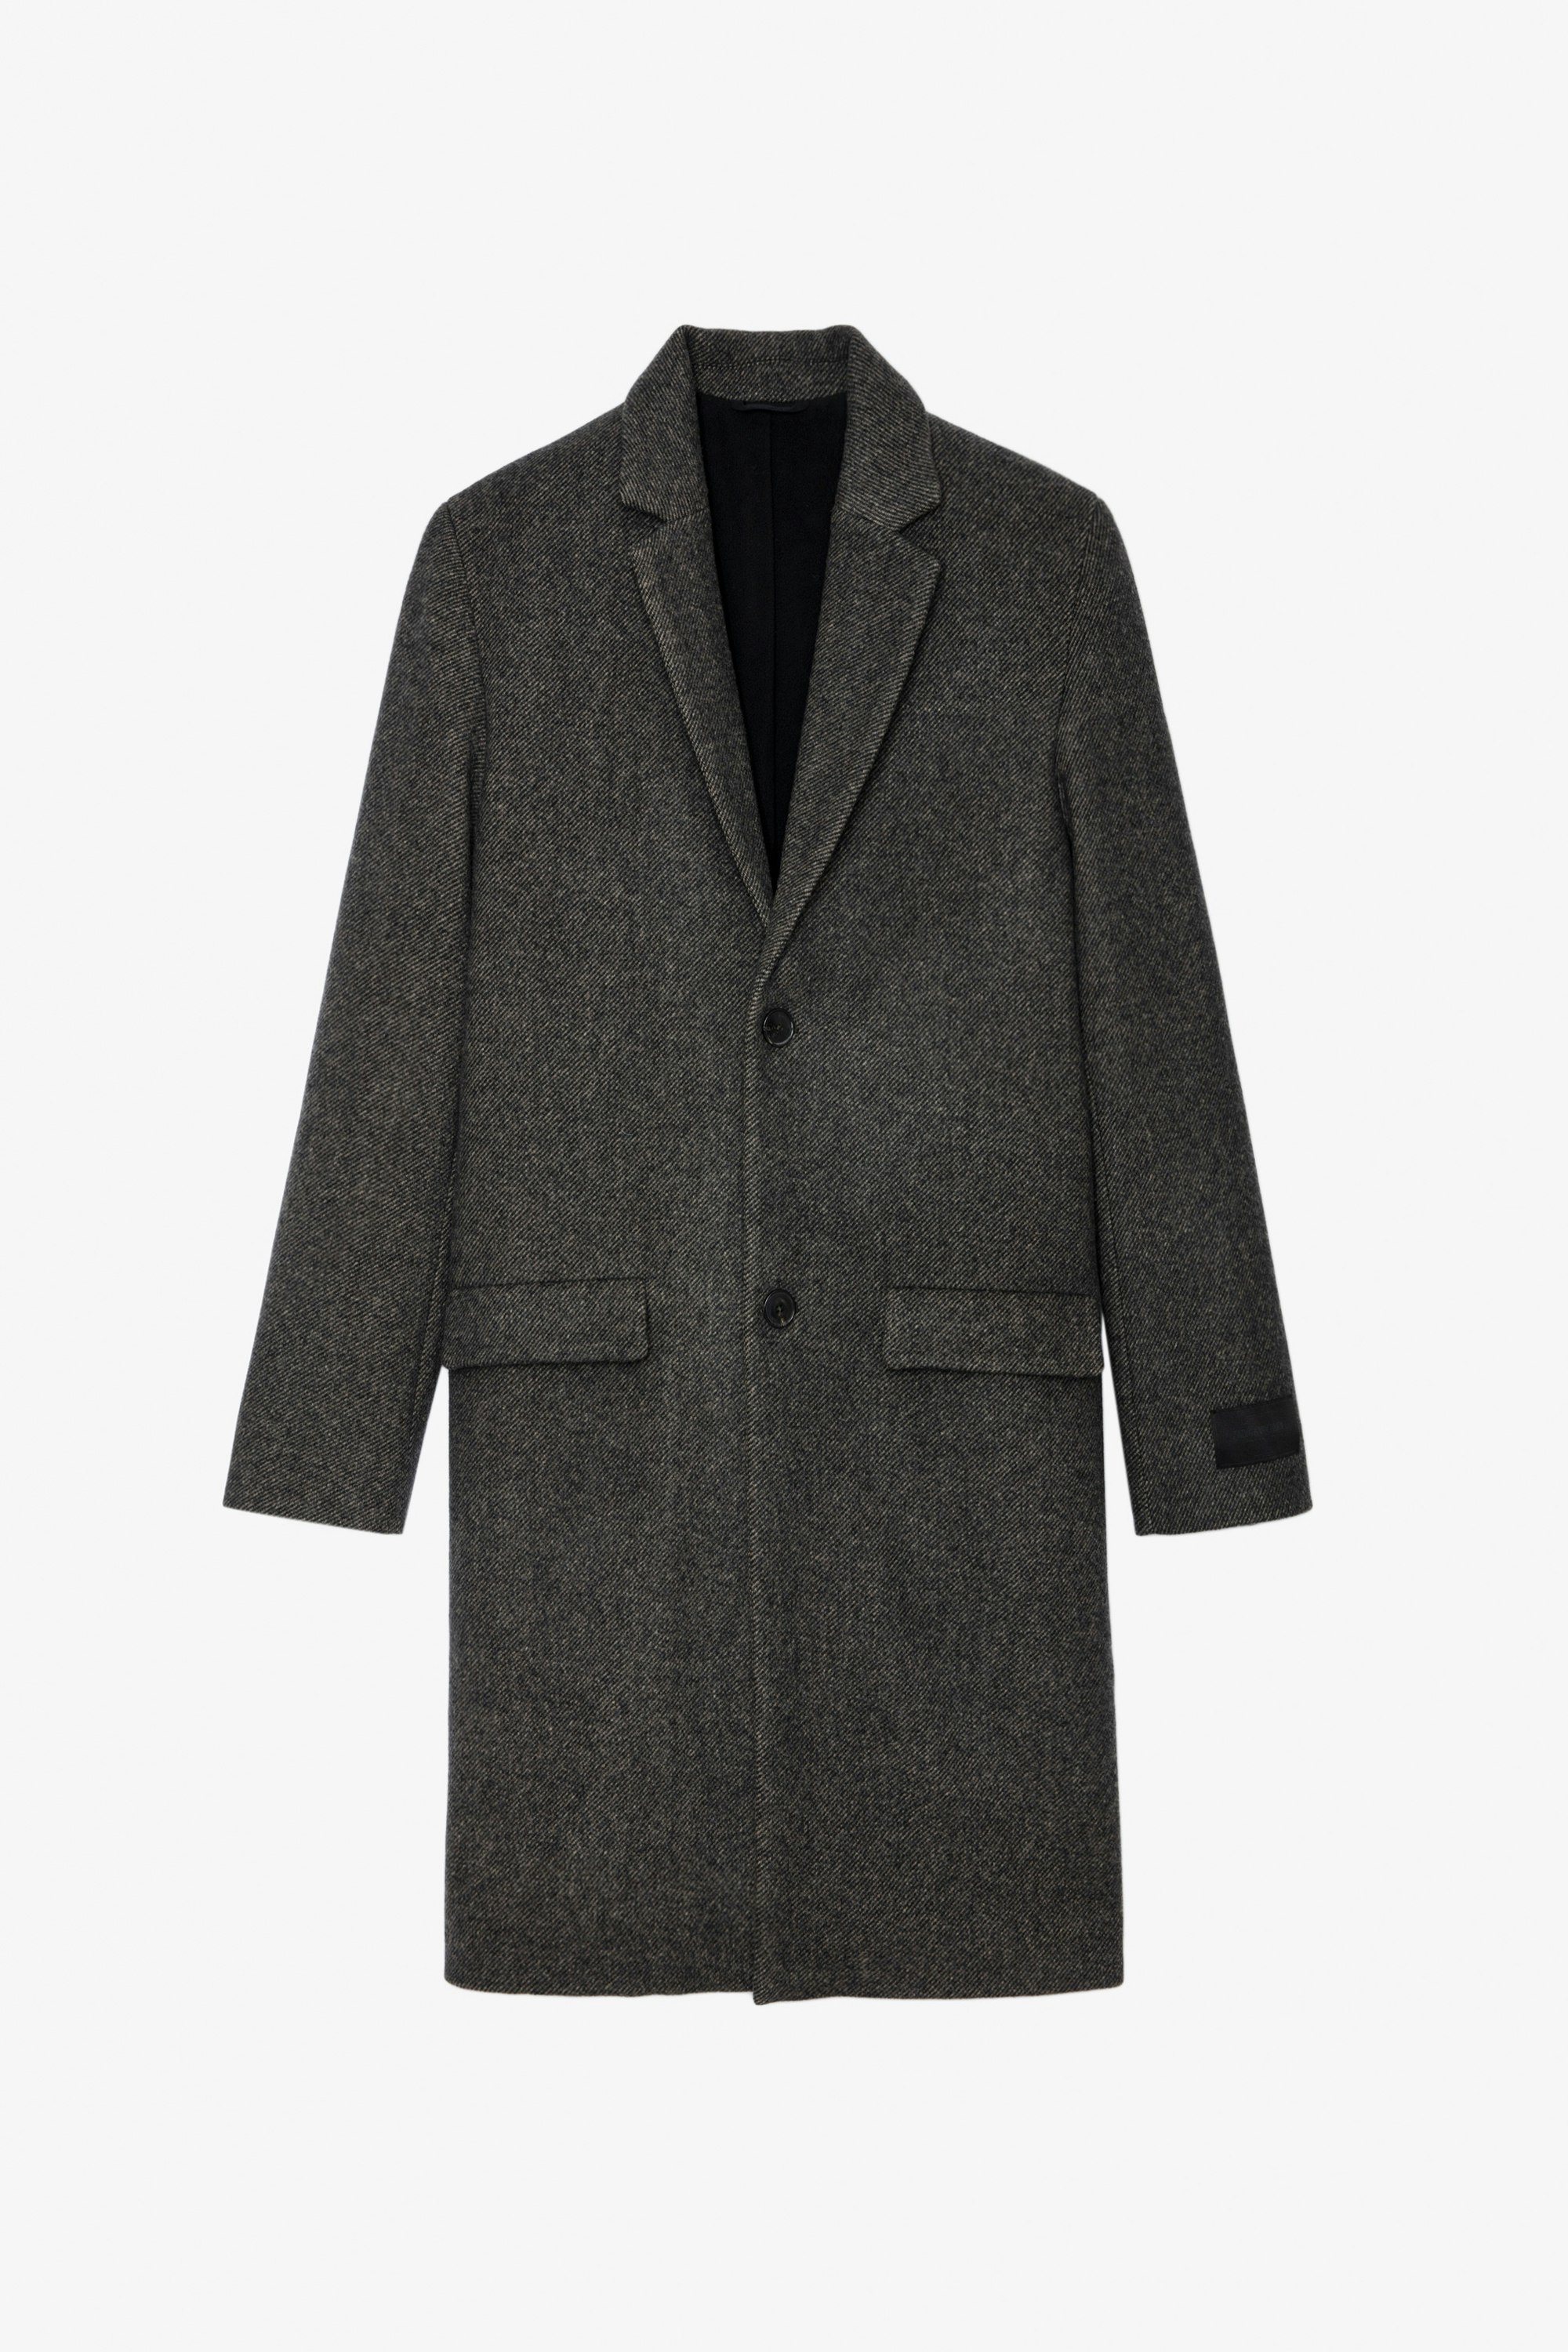 Mark Coat - Unisex midi coat in anthracite herringbone wool with contrasting undercollar featuring the slogan “C’est la faute à Voltaire”.